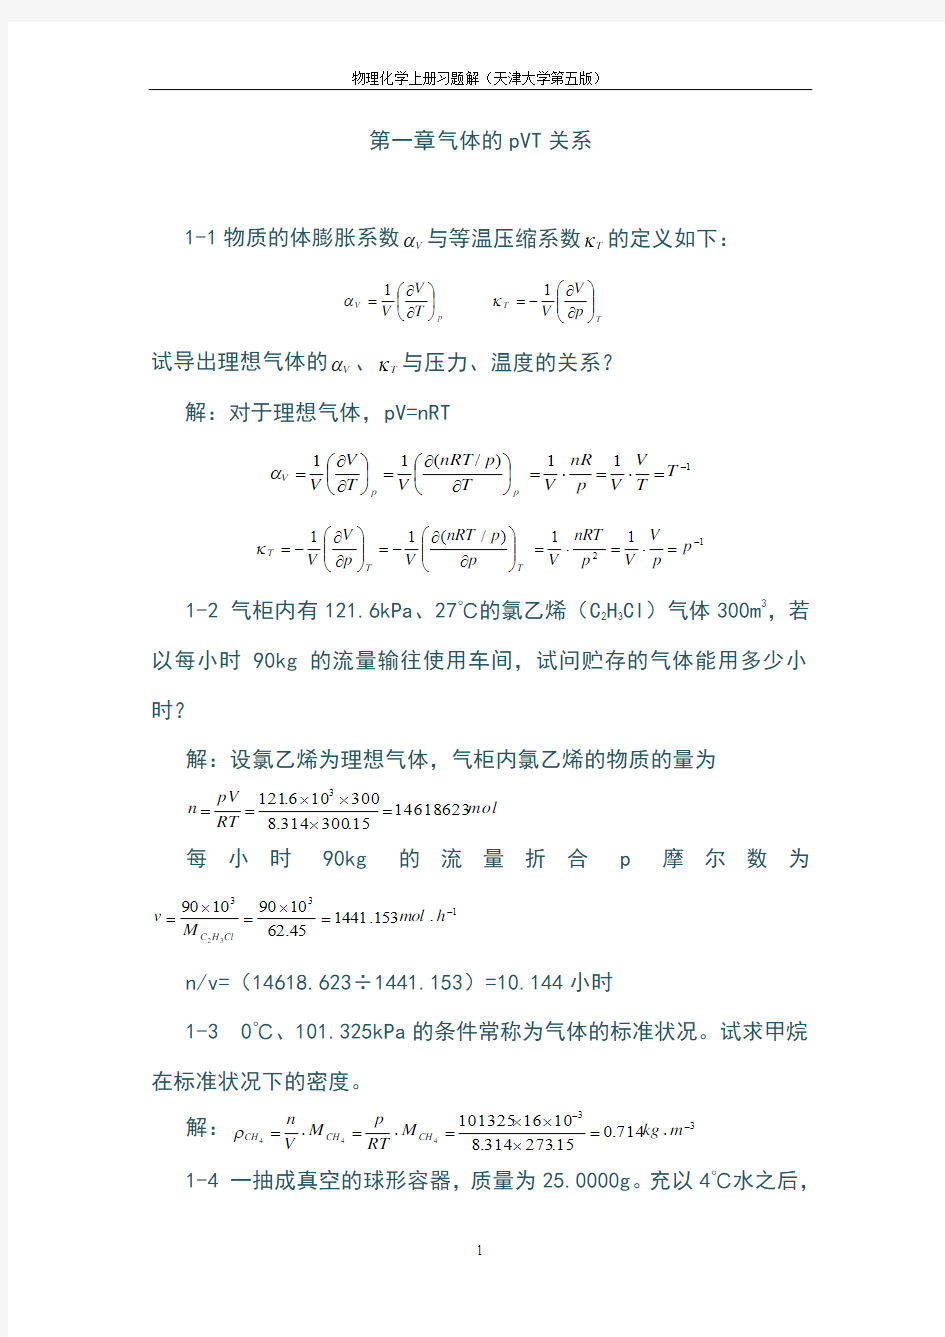 最新天津大学第五版-刘俊吉-物理化学课后习题答案(全)